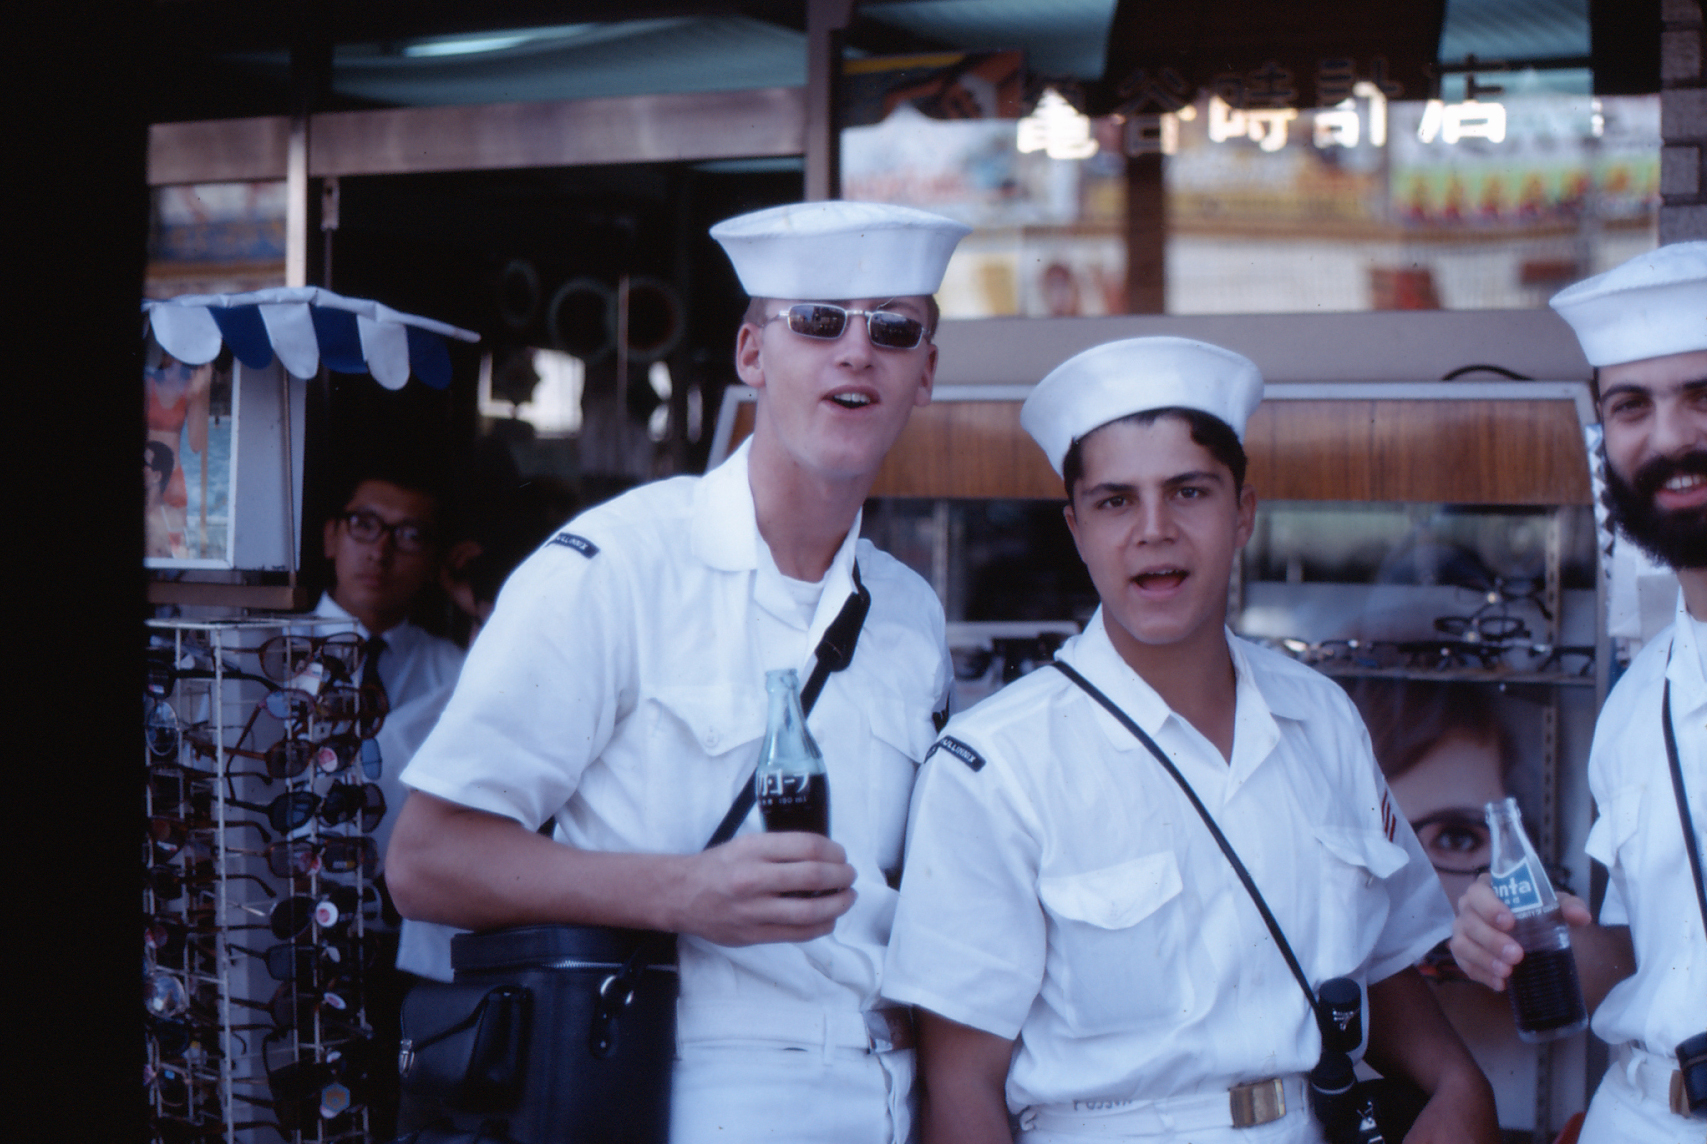 Dennis Houg (left) John Vasco (right) with the Japanese coke